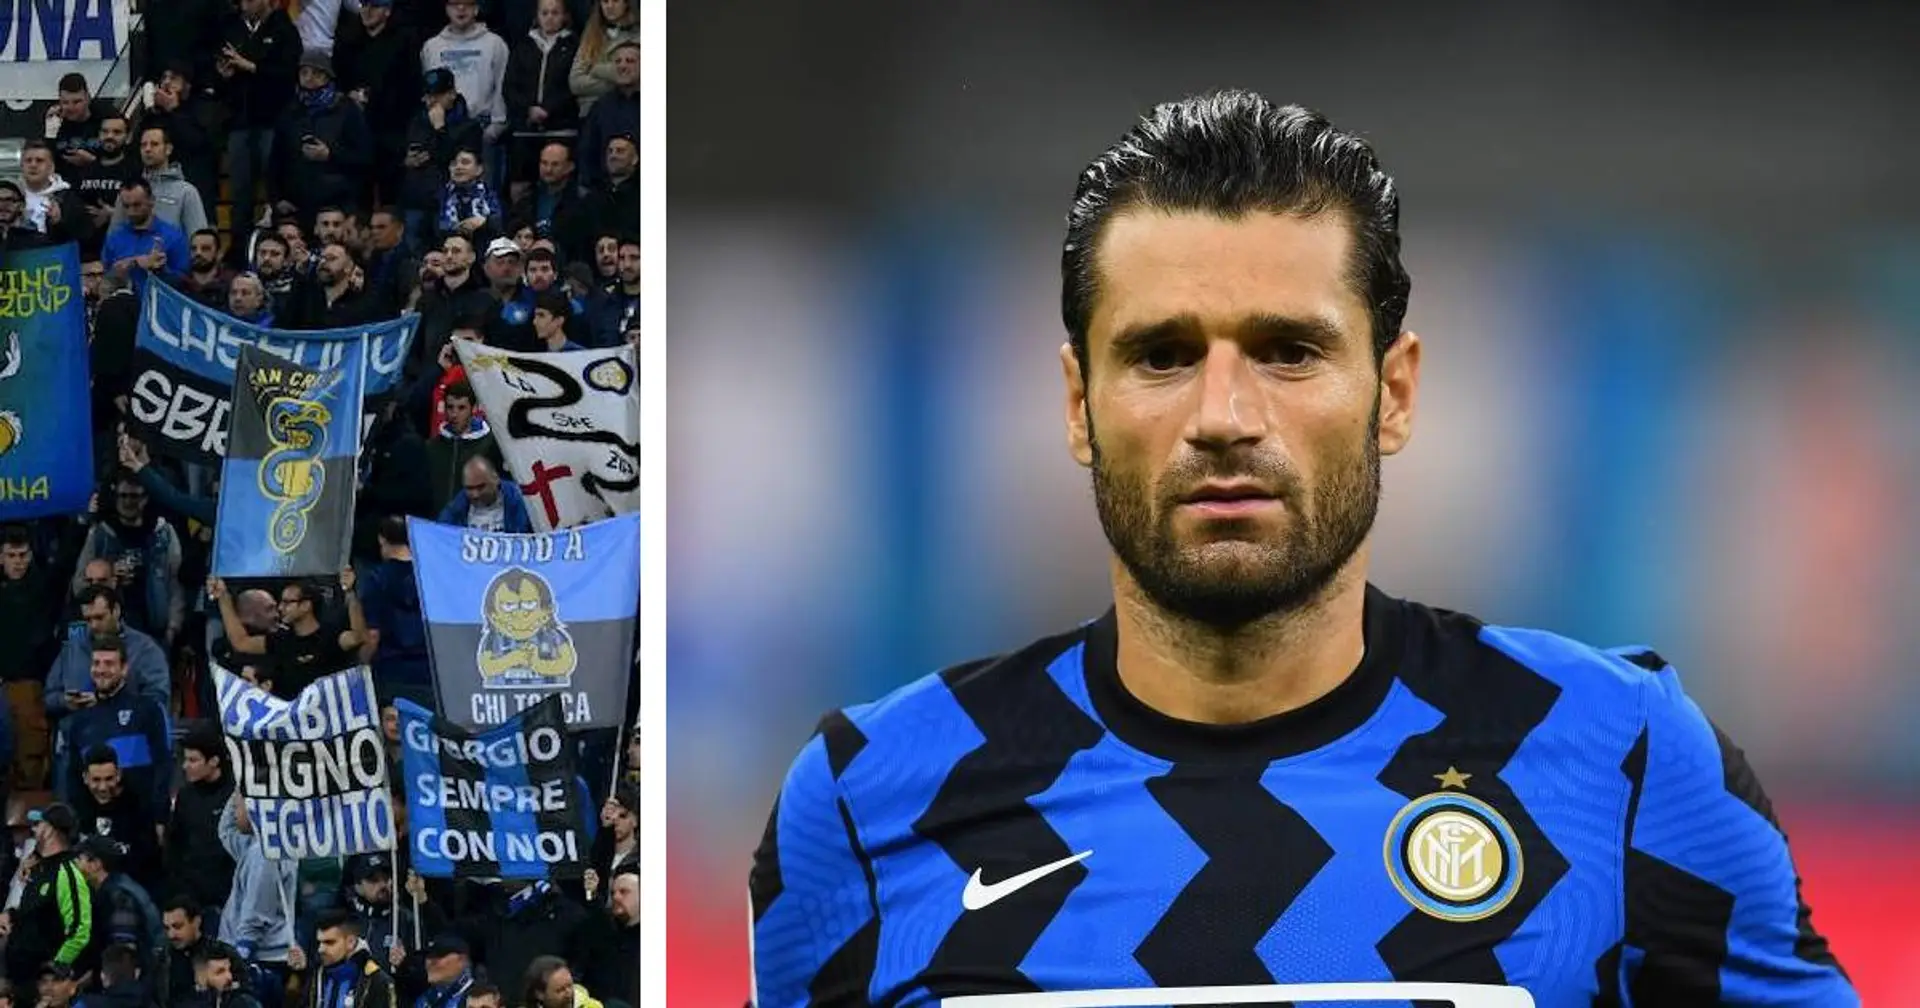 "Non era un fenomeno ma ha sempre onorato la maglia!", un tifoso dell'Inter riconosce i meriti di Candreva 